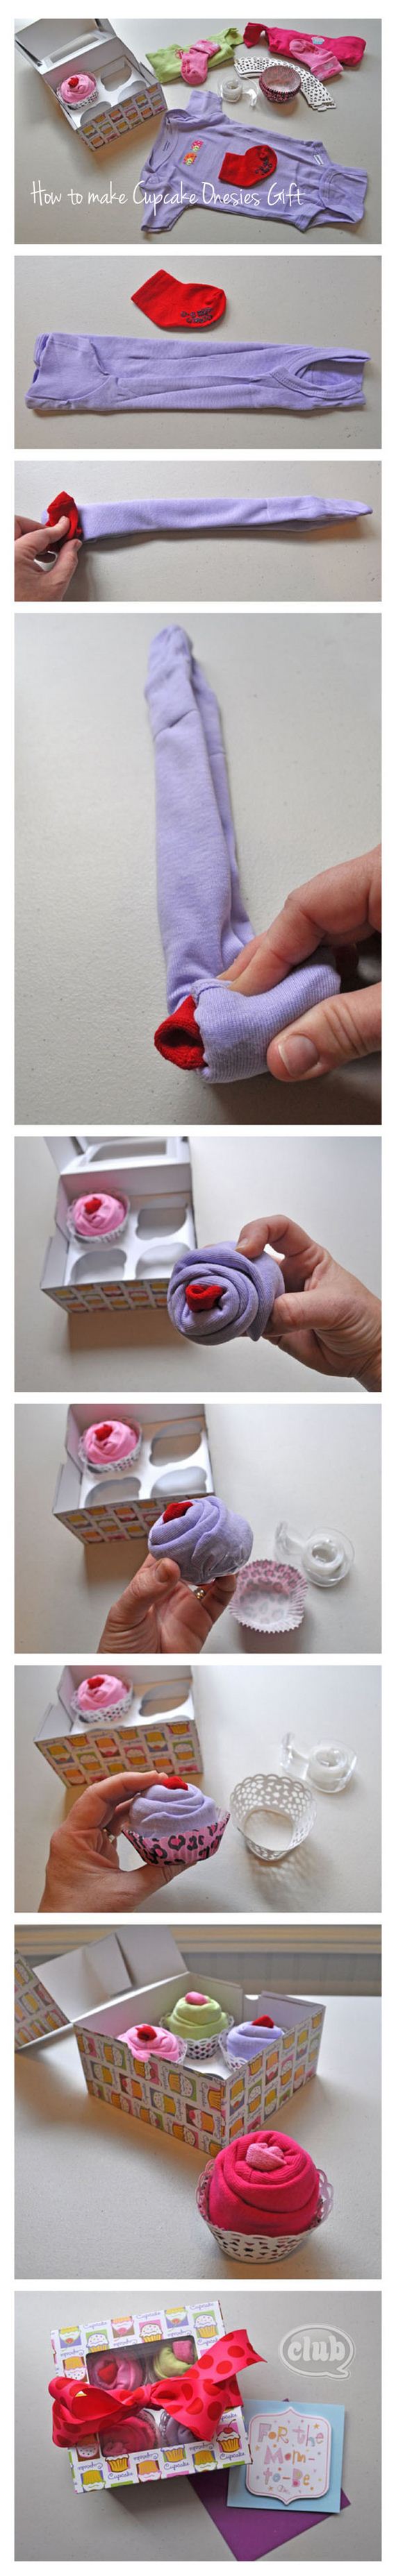 cupcake-onesies-gift-box